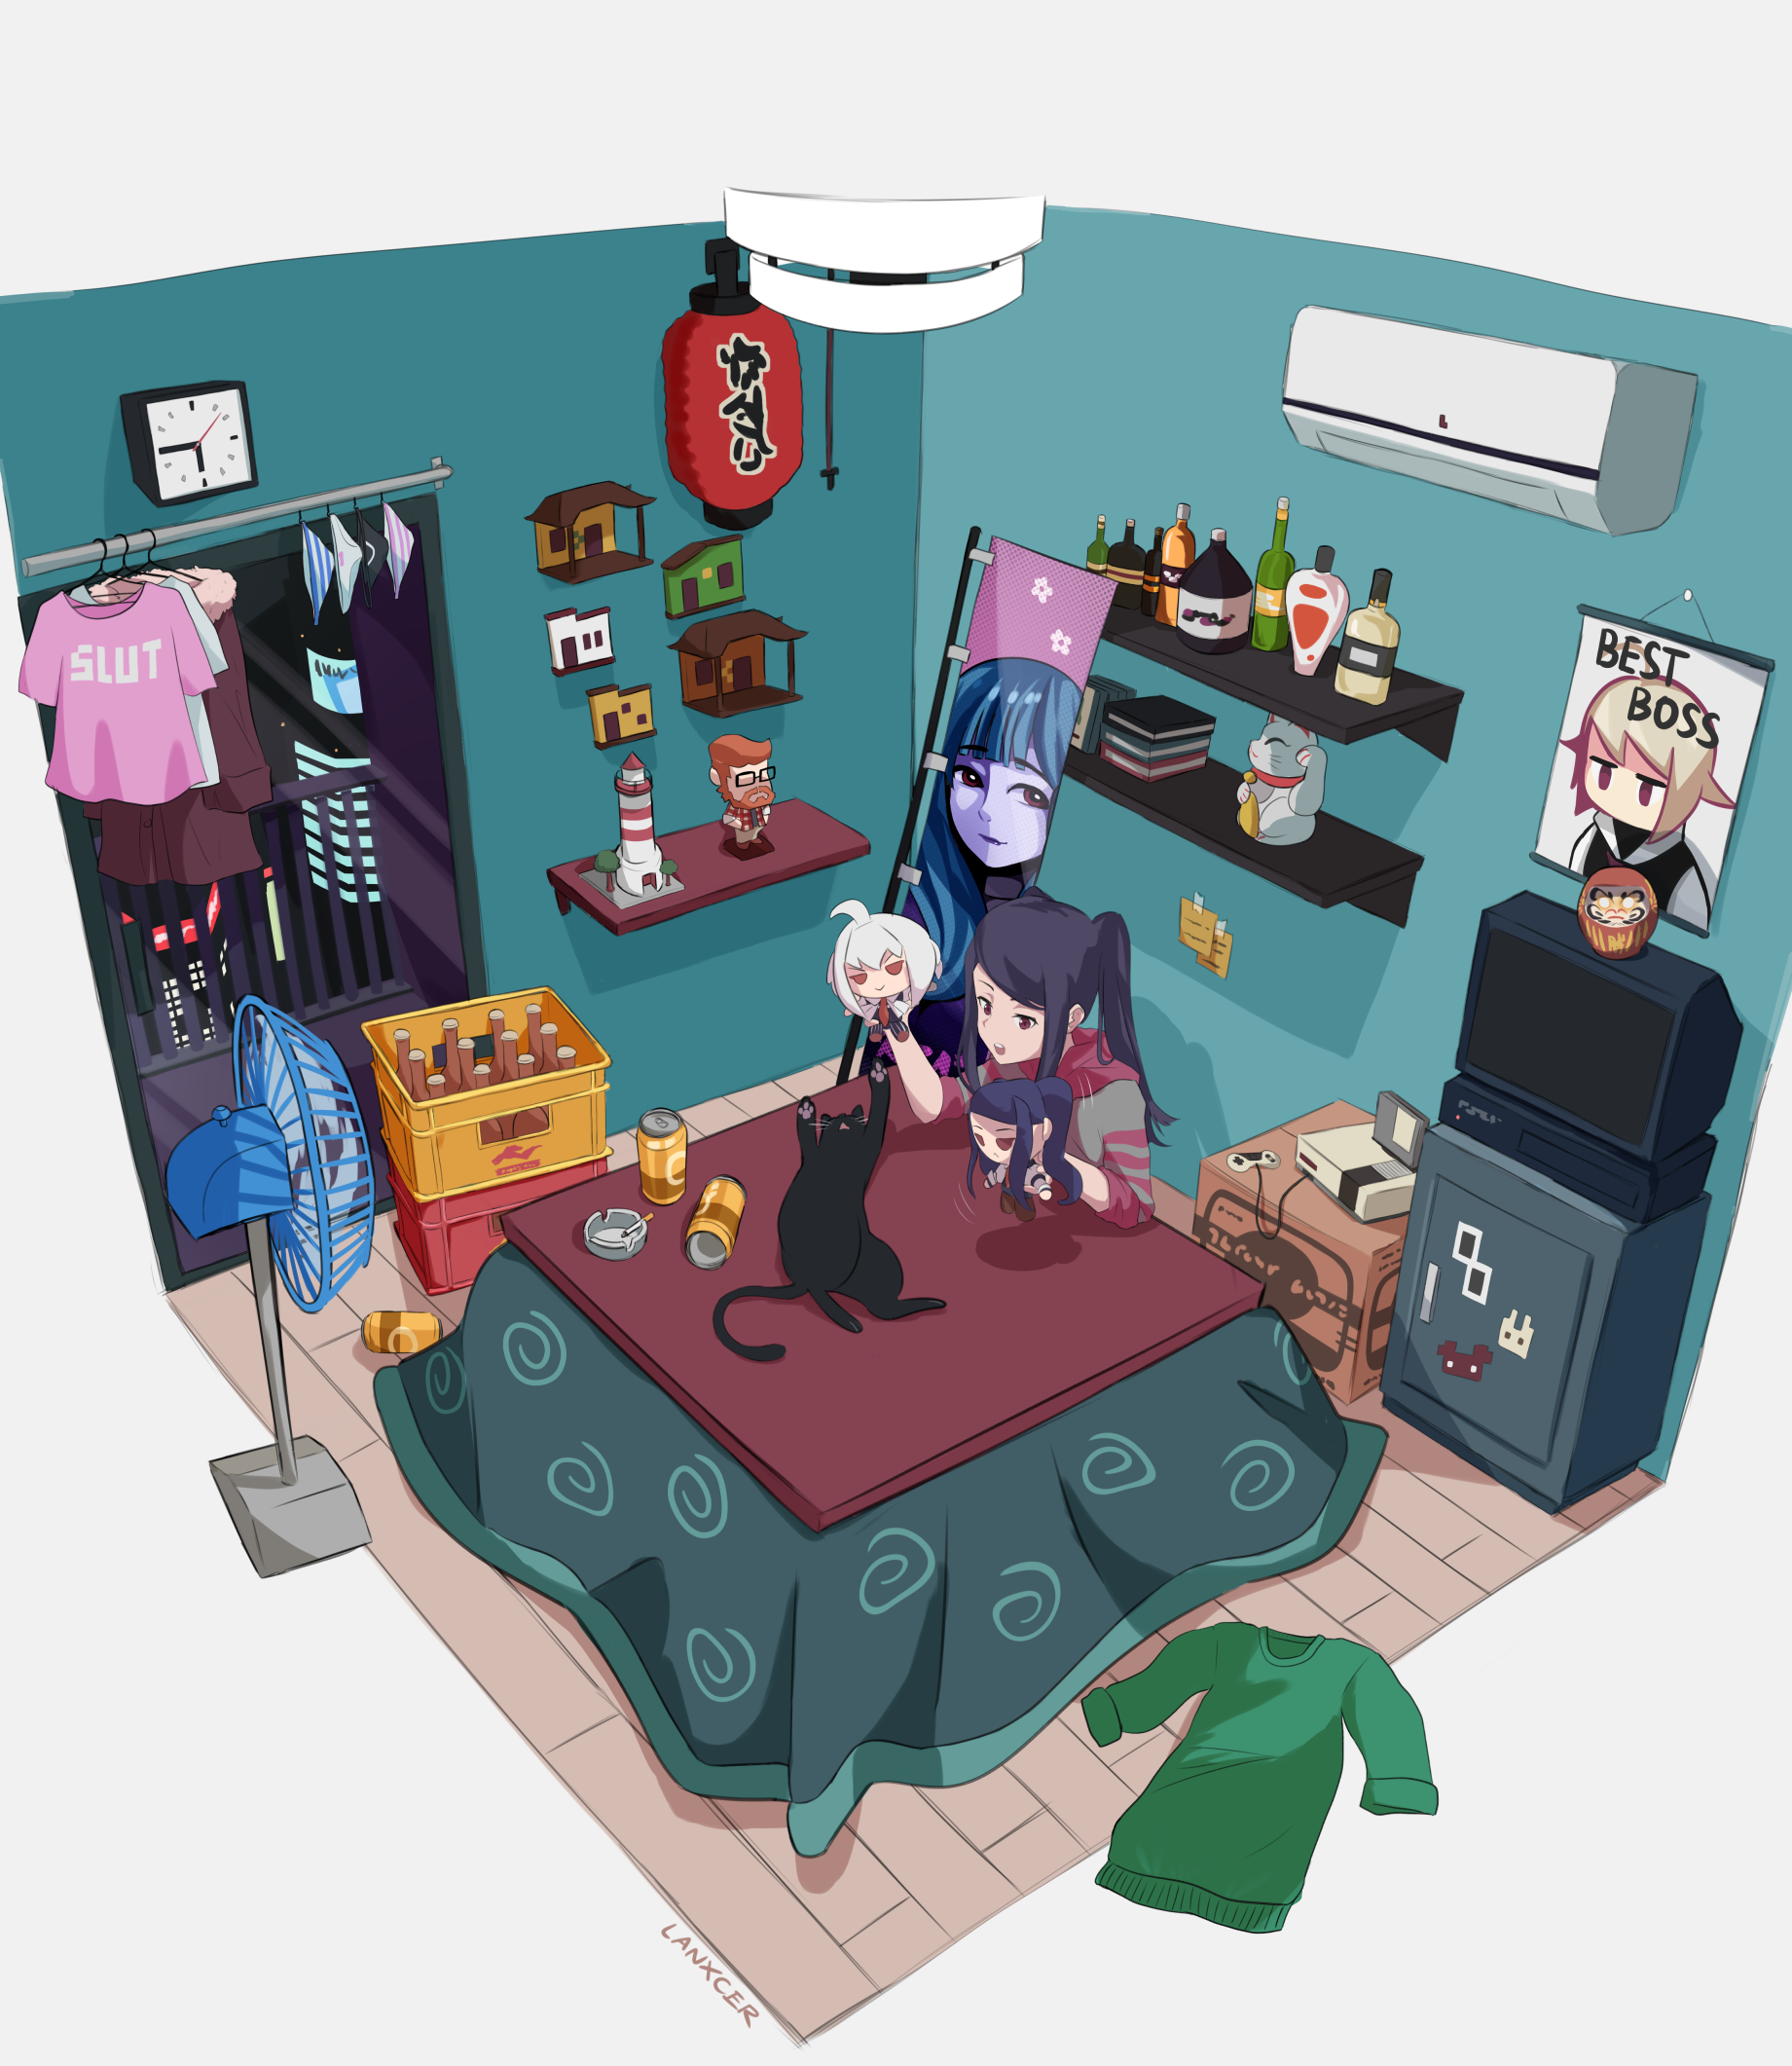 Jill's room